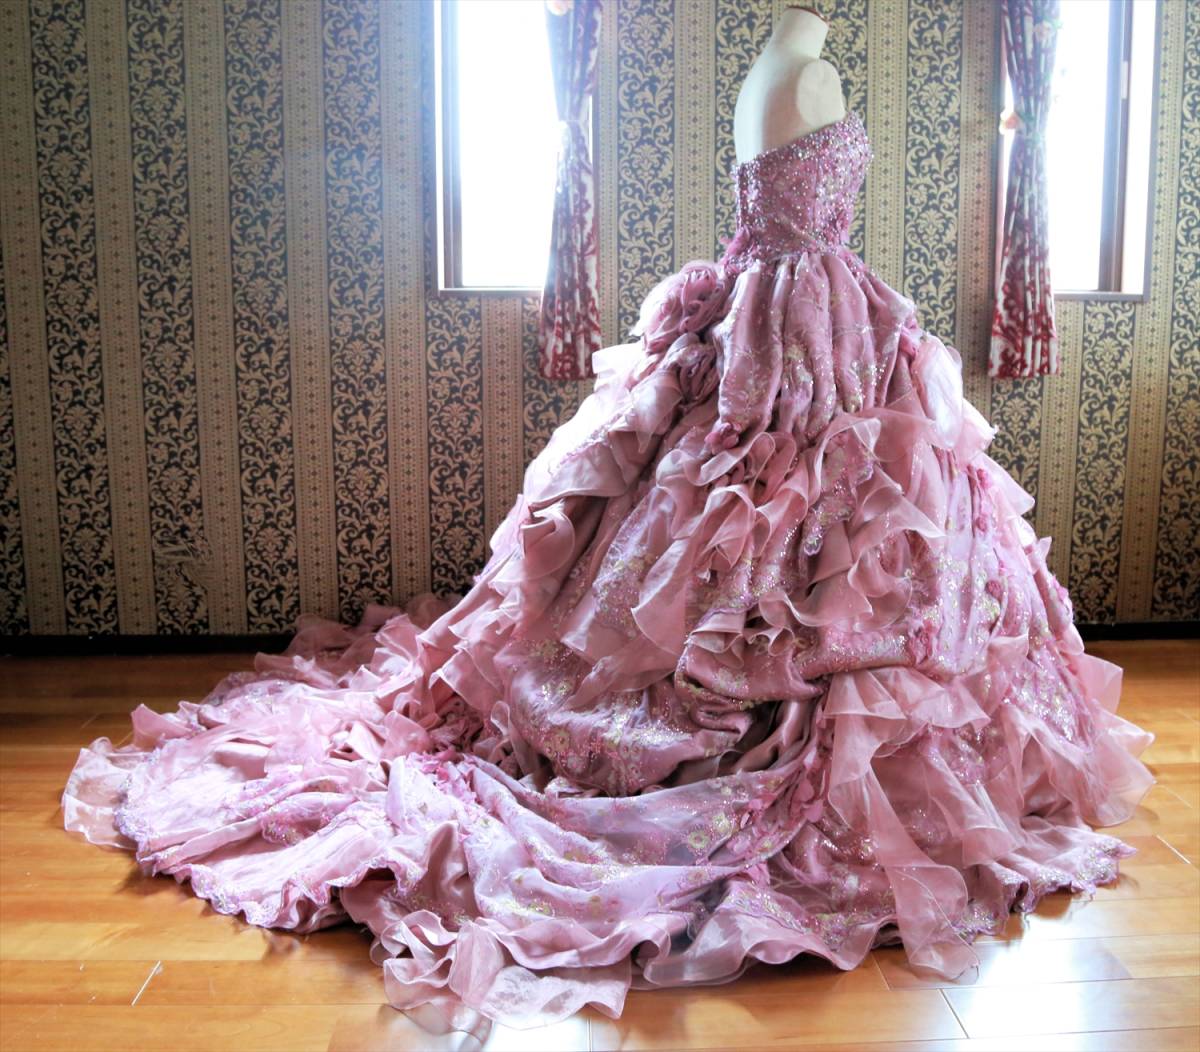 超豪華な逸品 高級ウエディングドレスMサイズ9号 送料無料ピンクパープルカラードレス